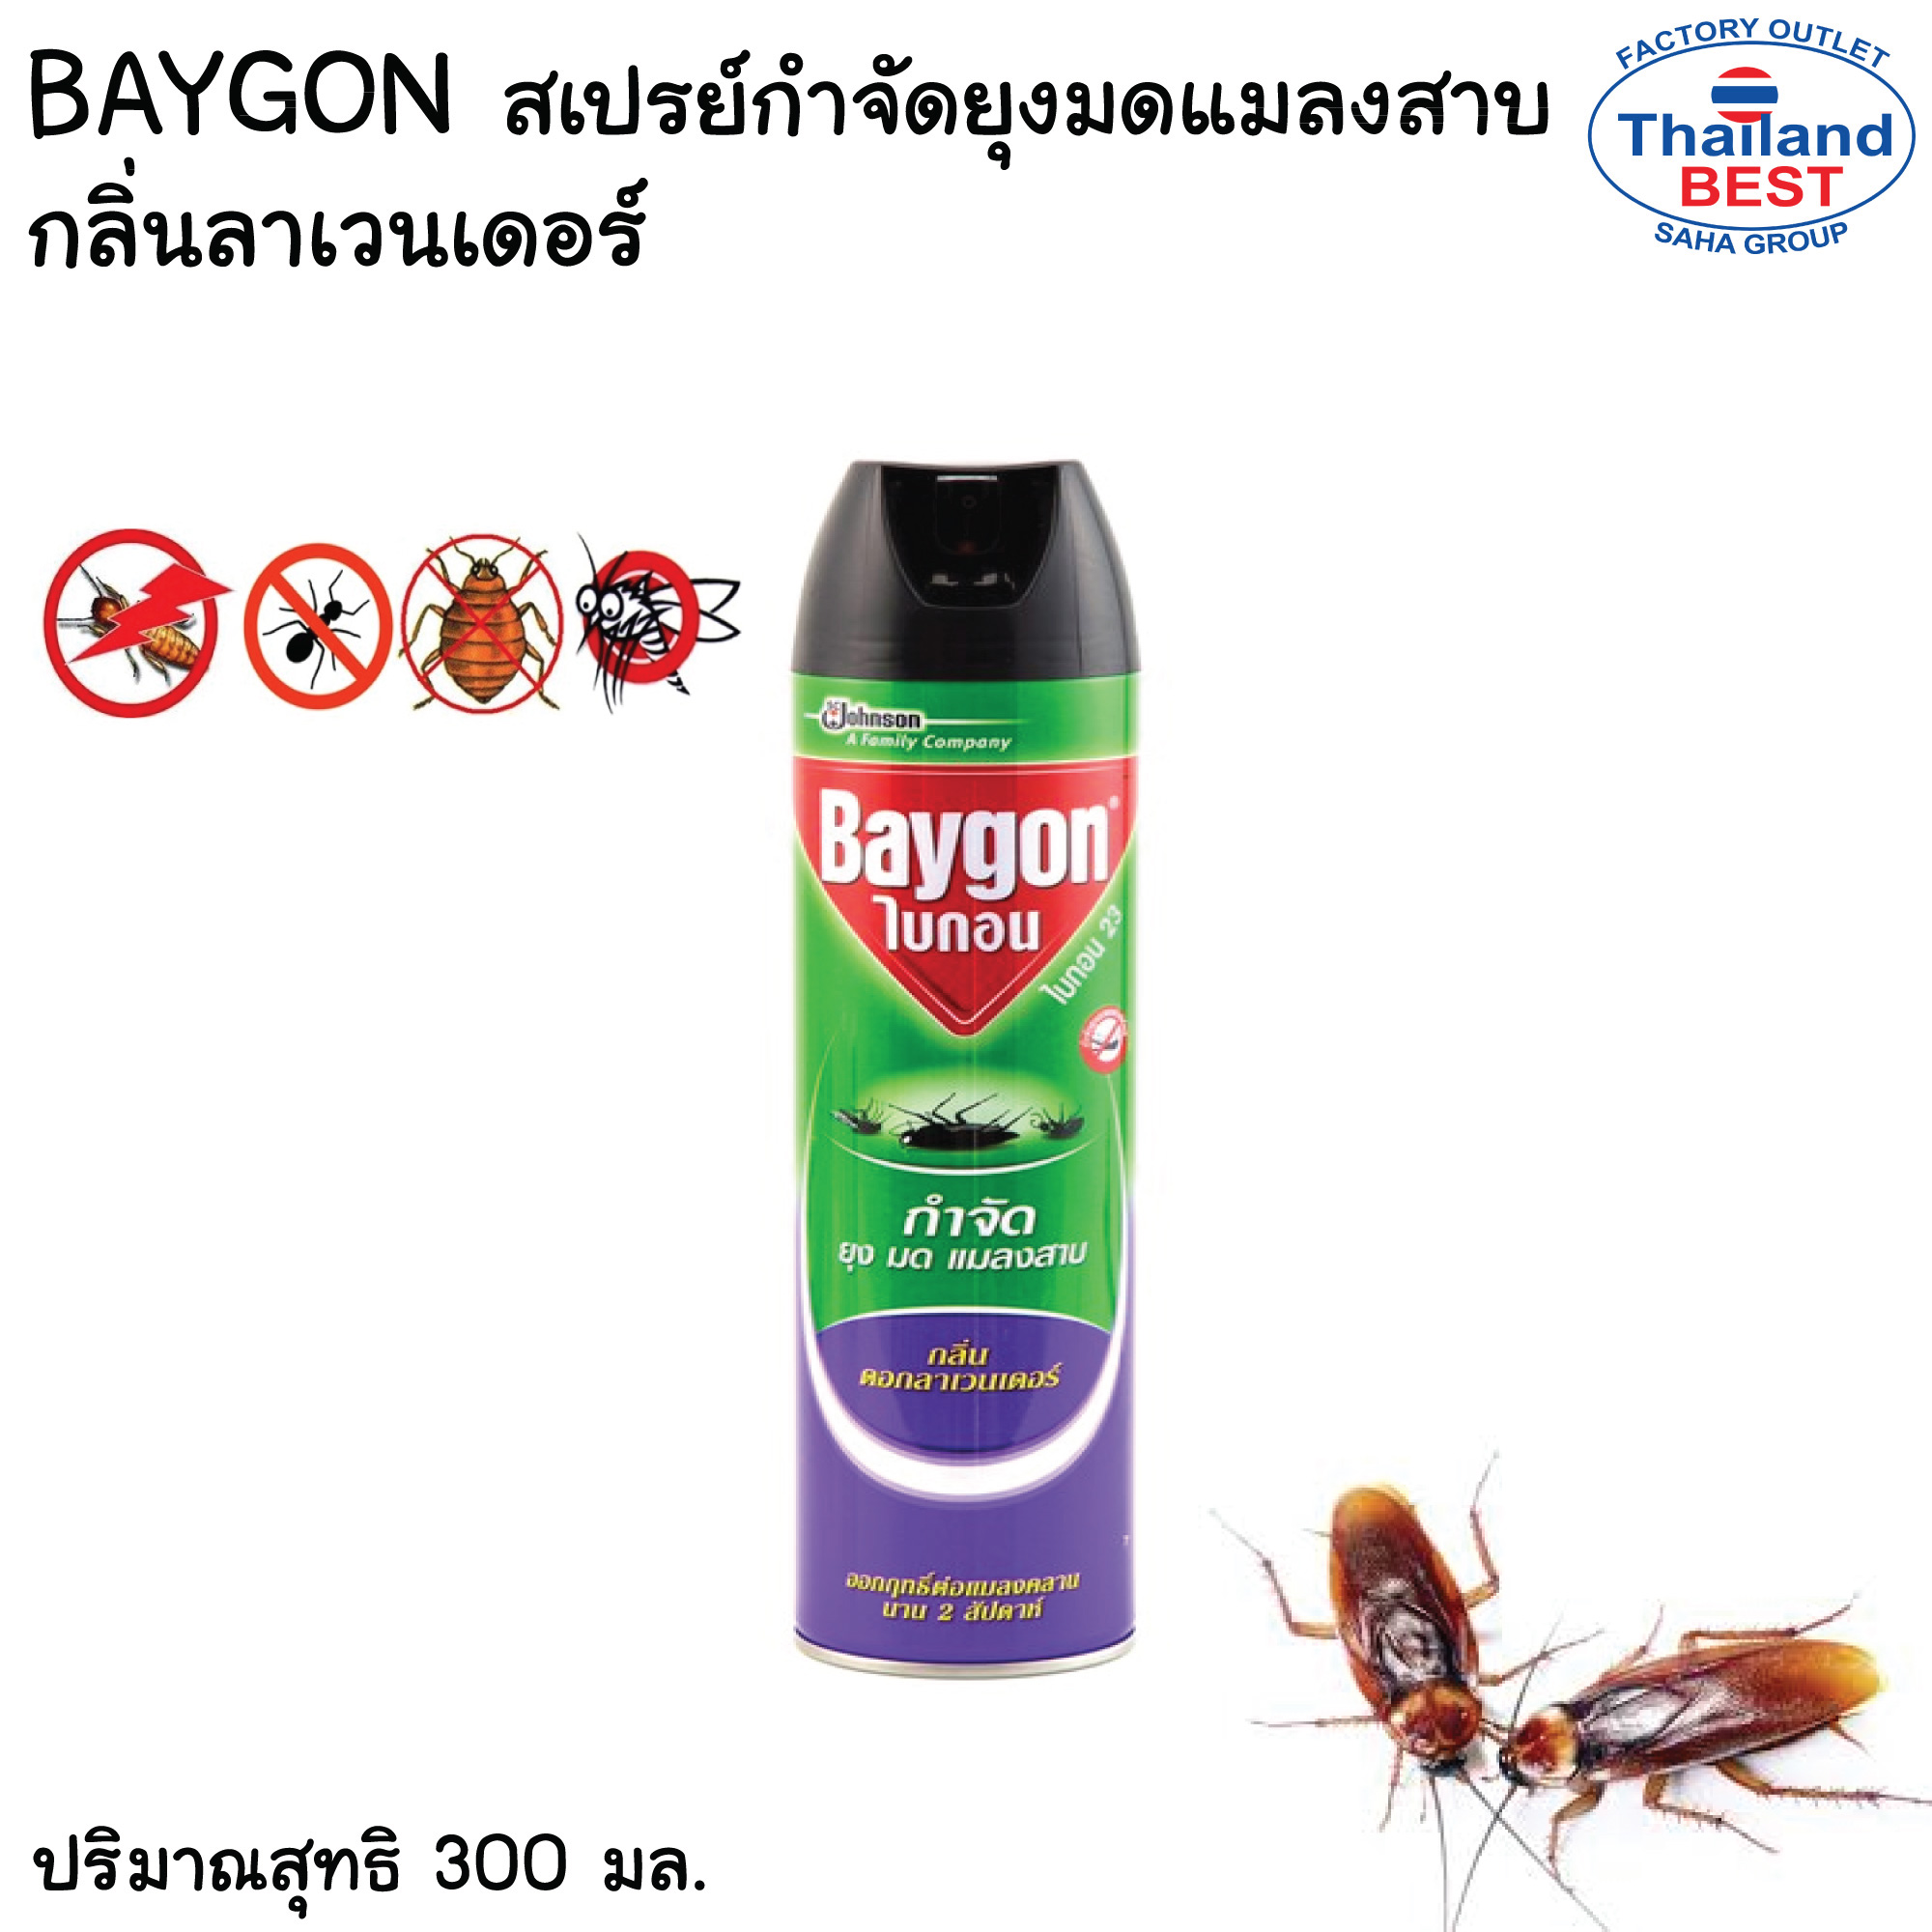 Baygon สเปรย์หัวคู่ กำจัดยุงมดแมลงสาบ  กลิ่นลาเวนเดอร์ ปริมาณ 300 มล. ไบกอน 23